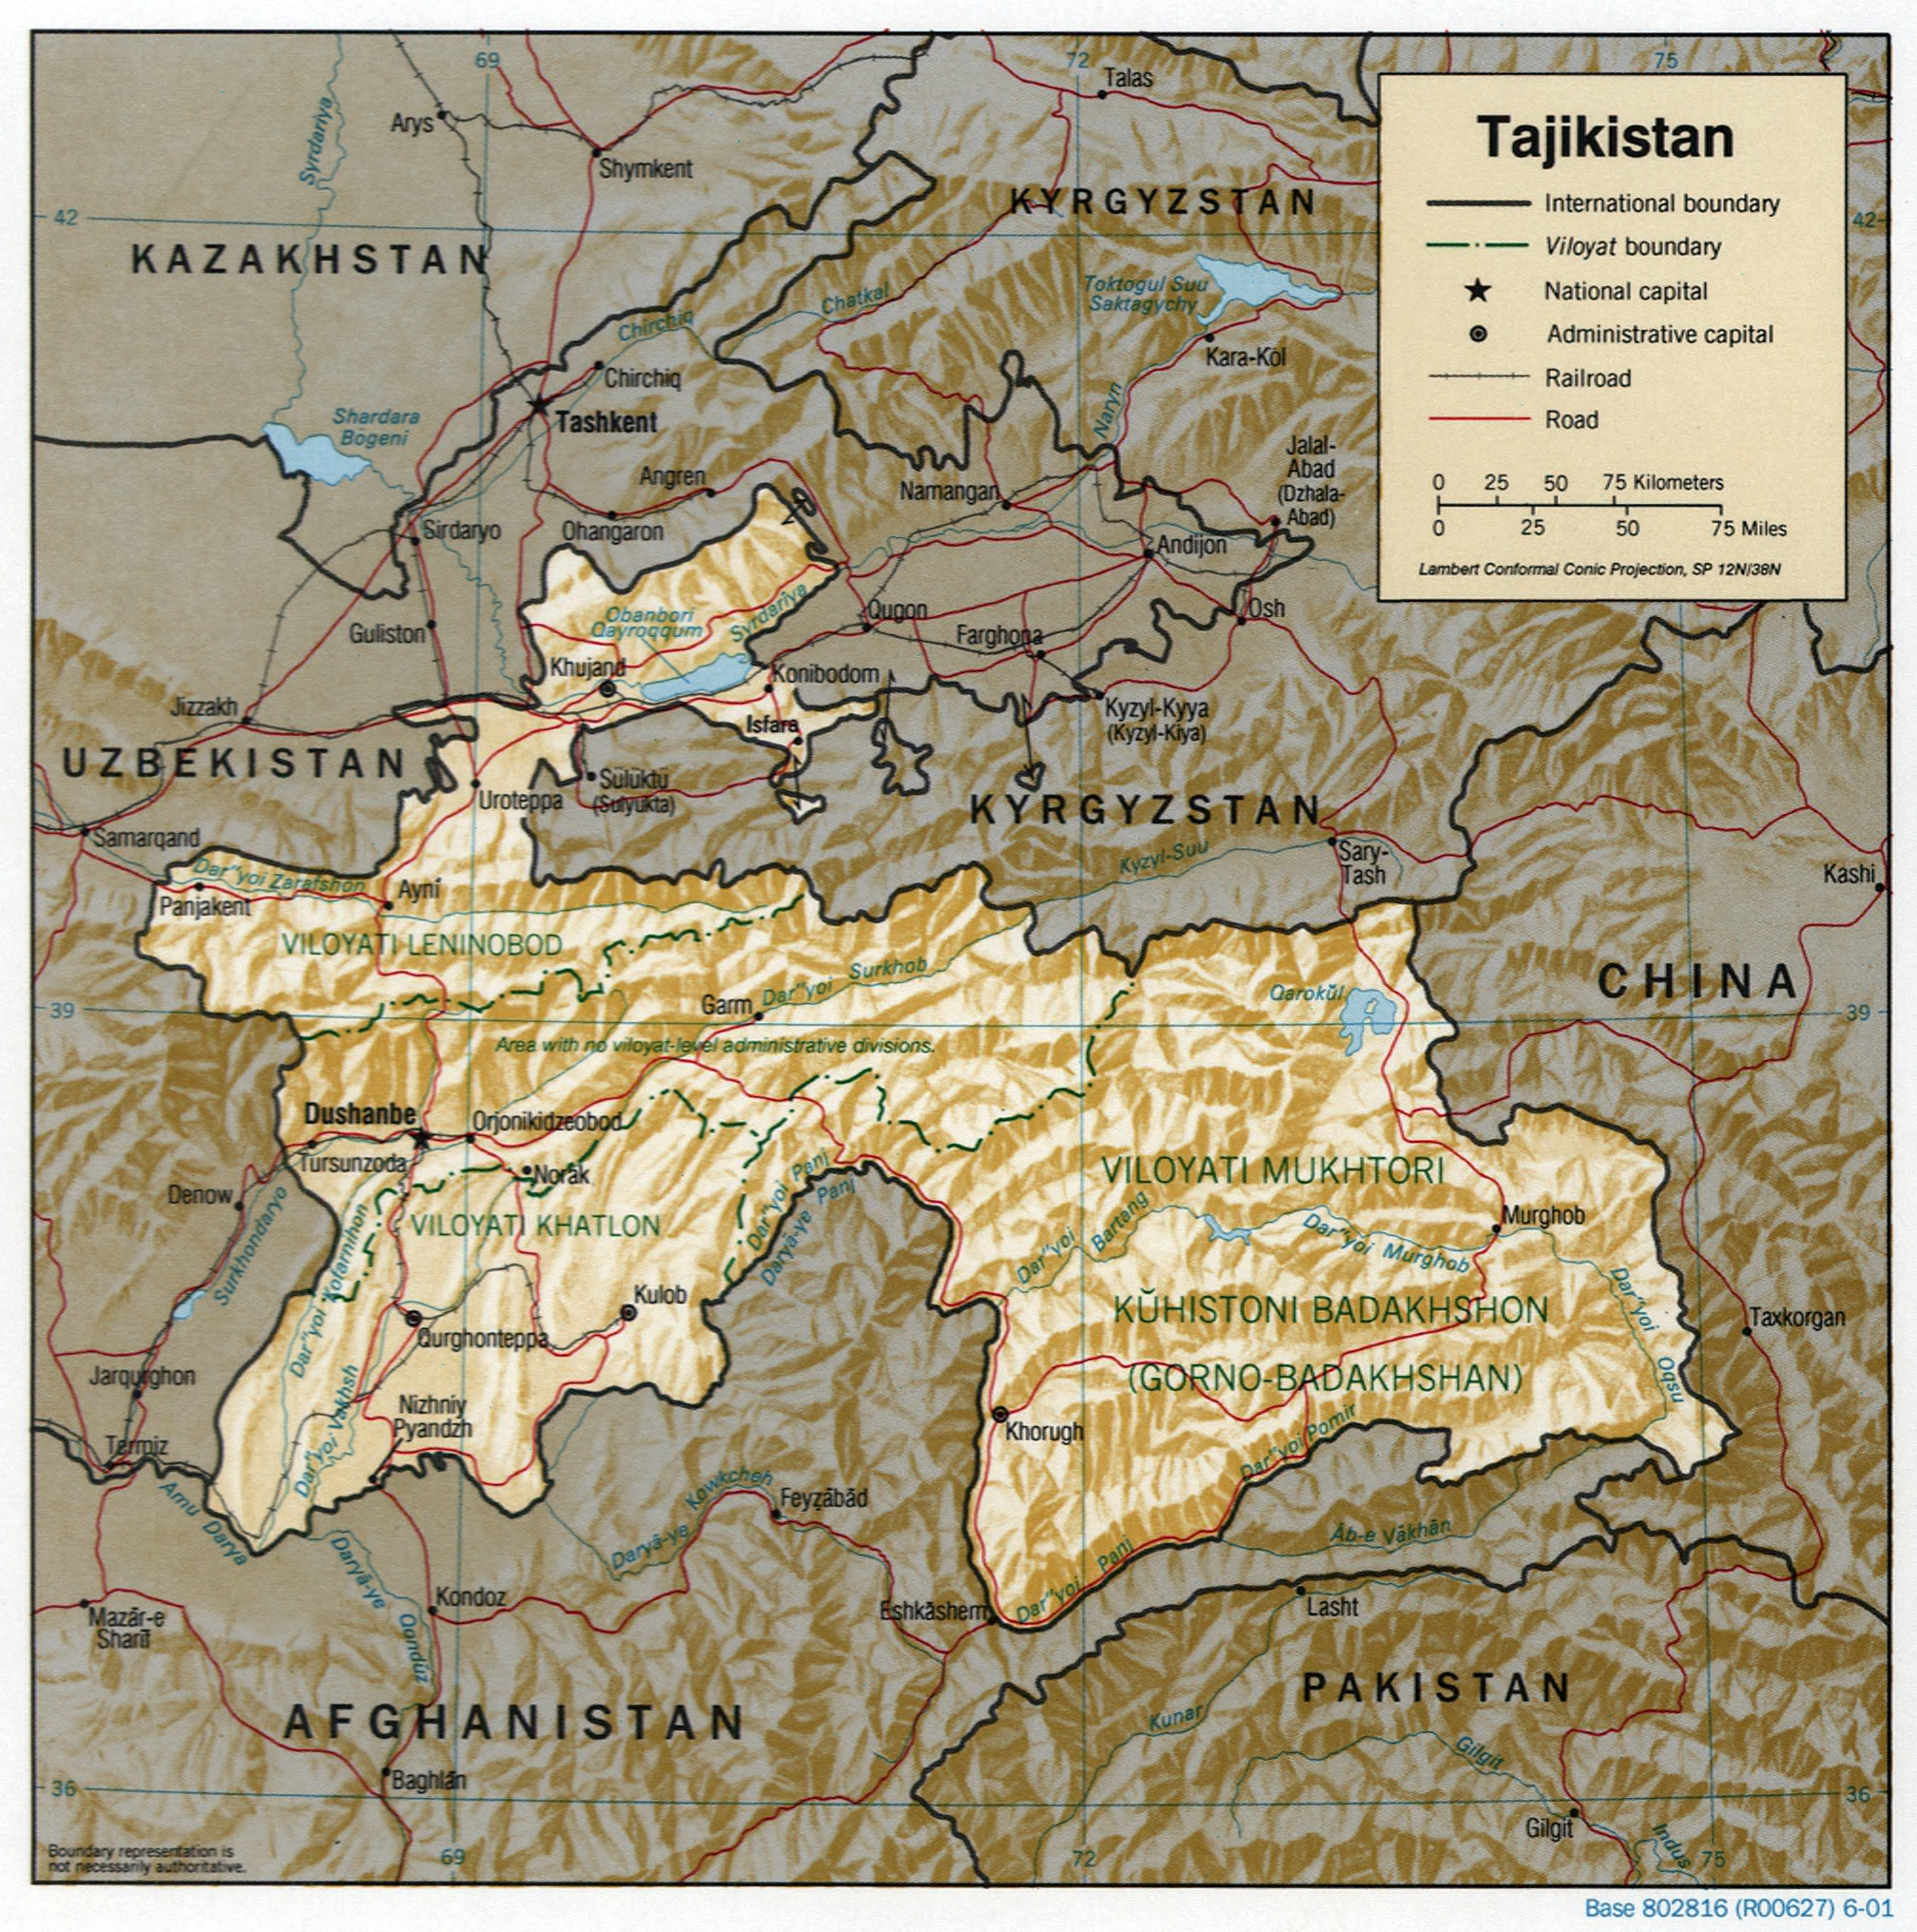 Tajikistan_2001_CIA_map.jpg